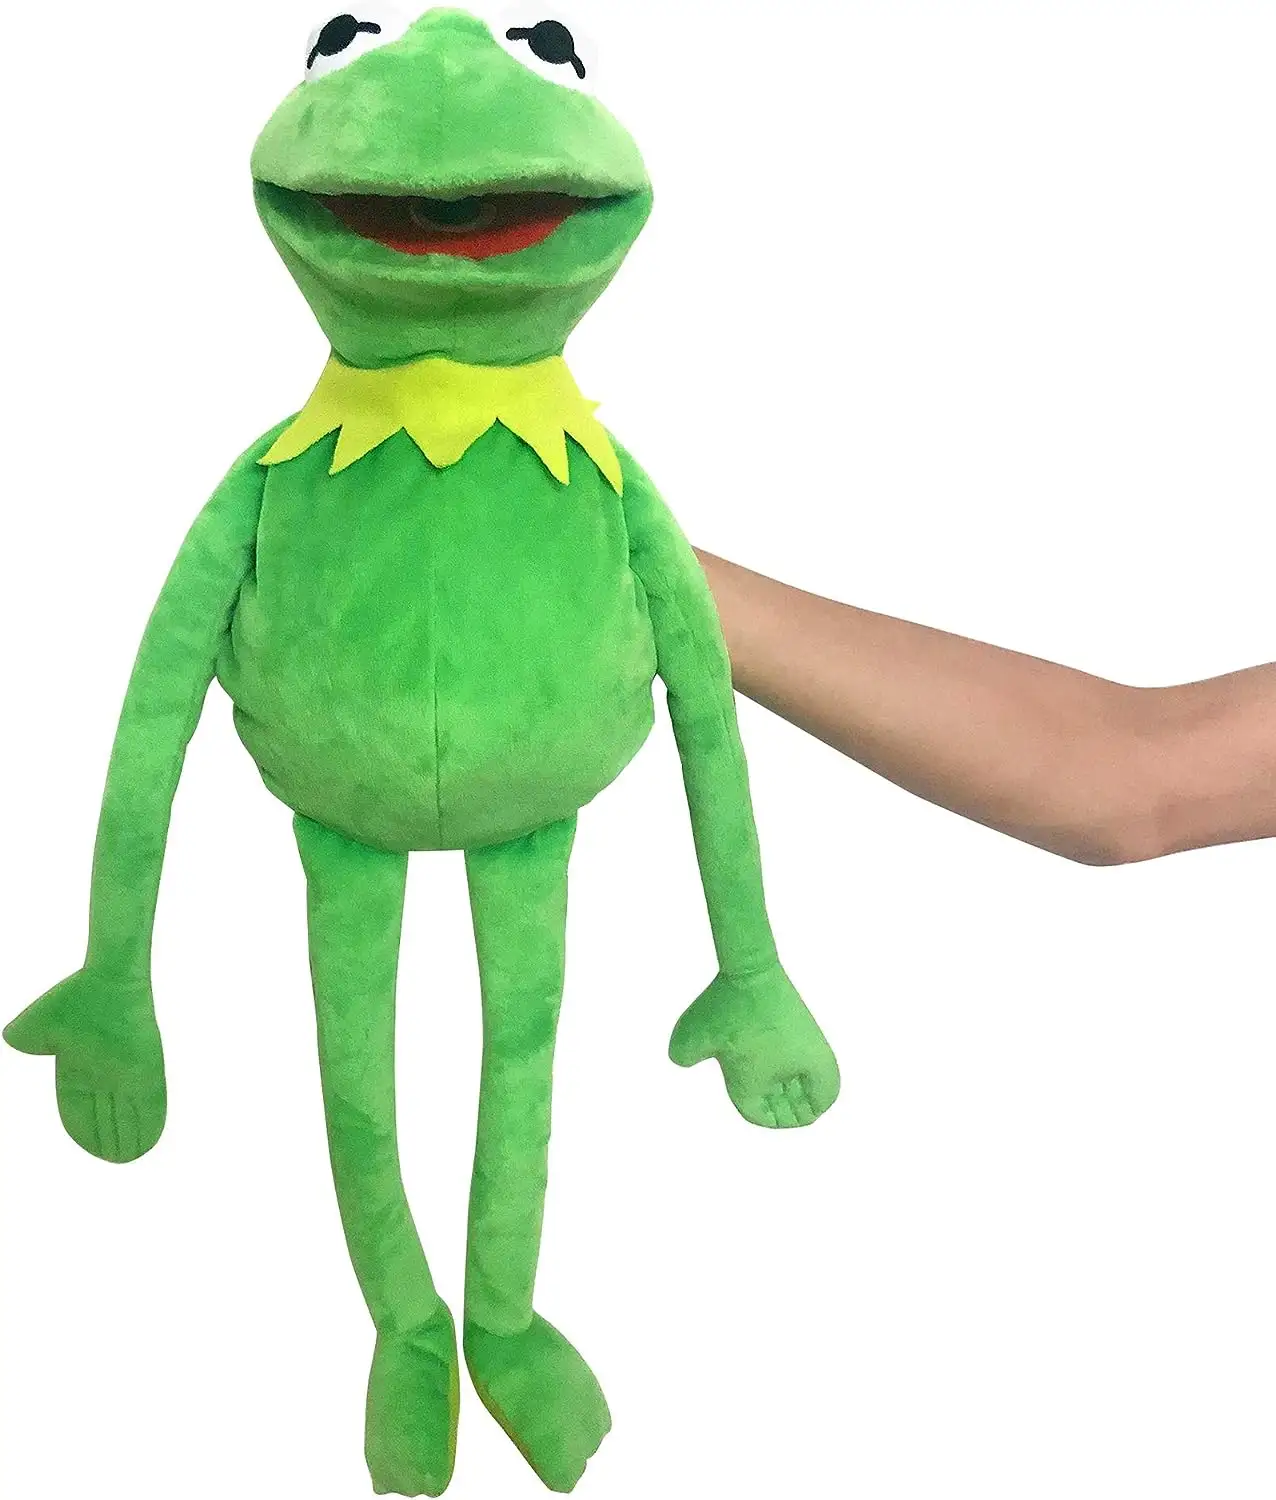 Marioneta de rana de 60cm, animales de peluche de dibujos animados, marioneta de mano de rana verde para niños, juguetes